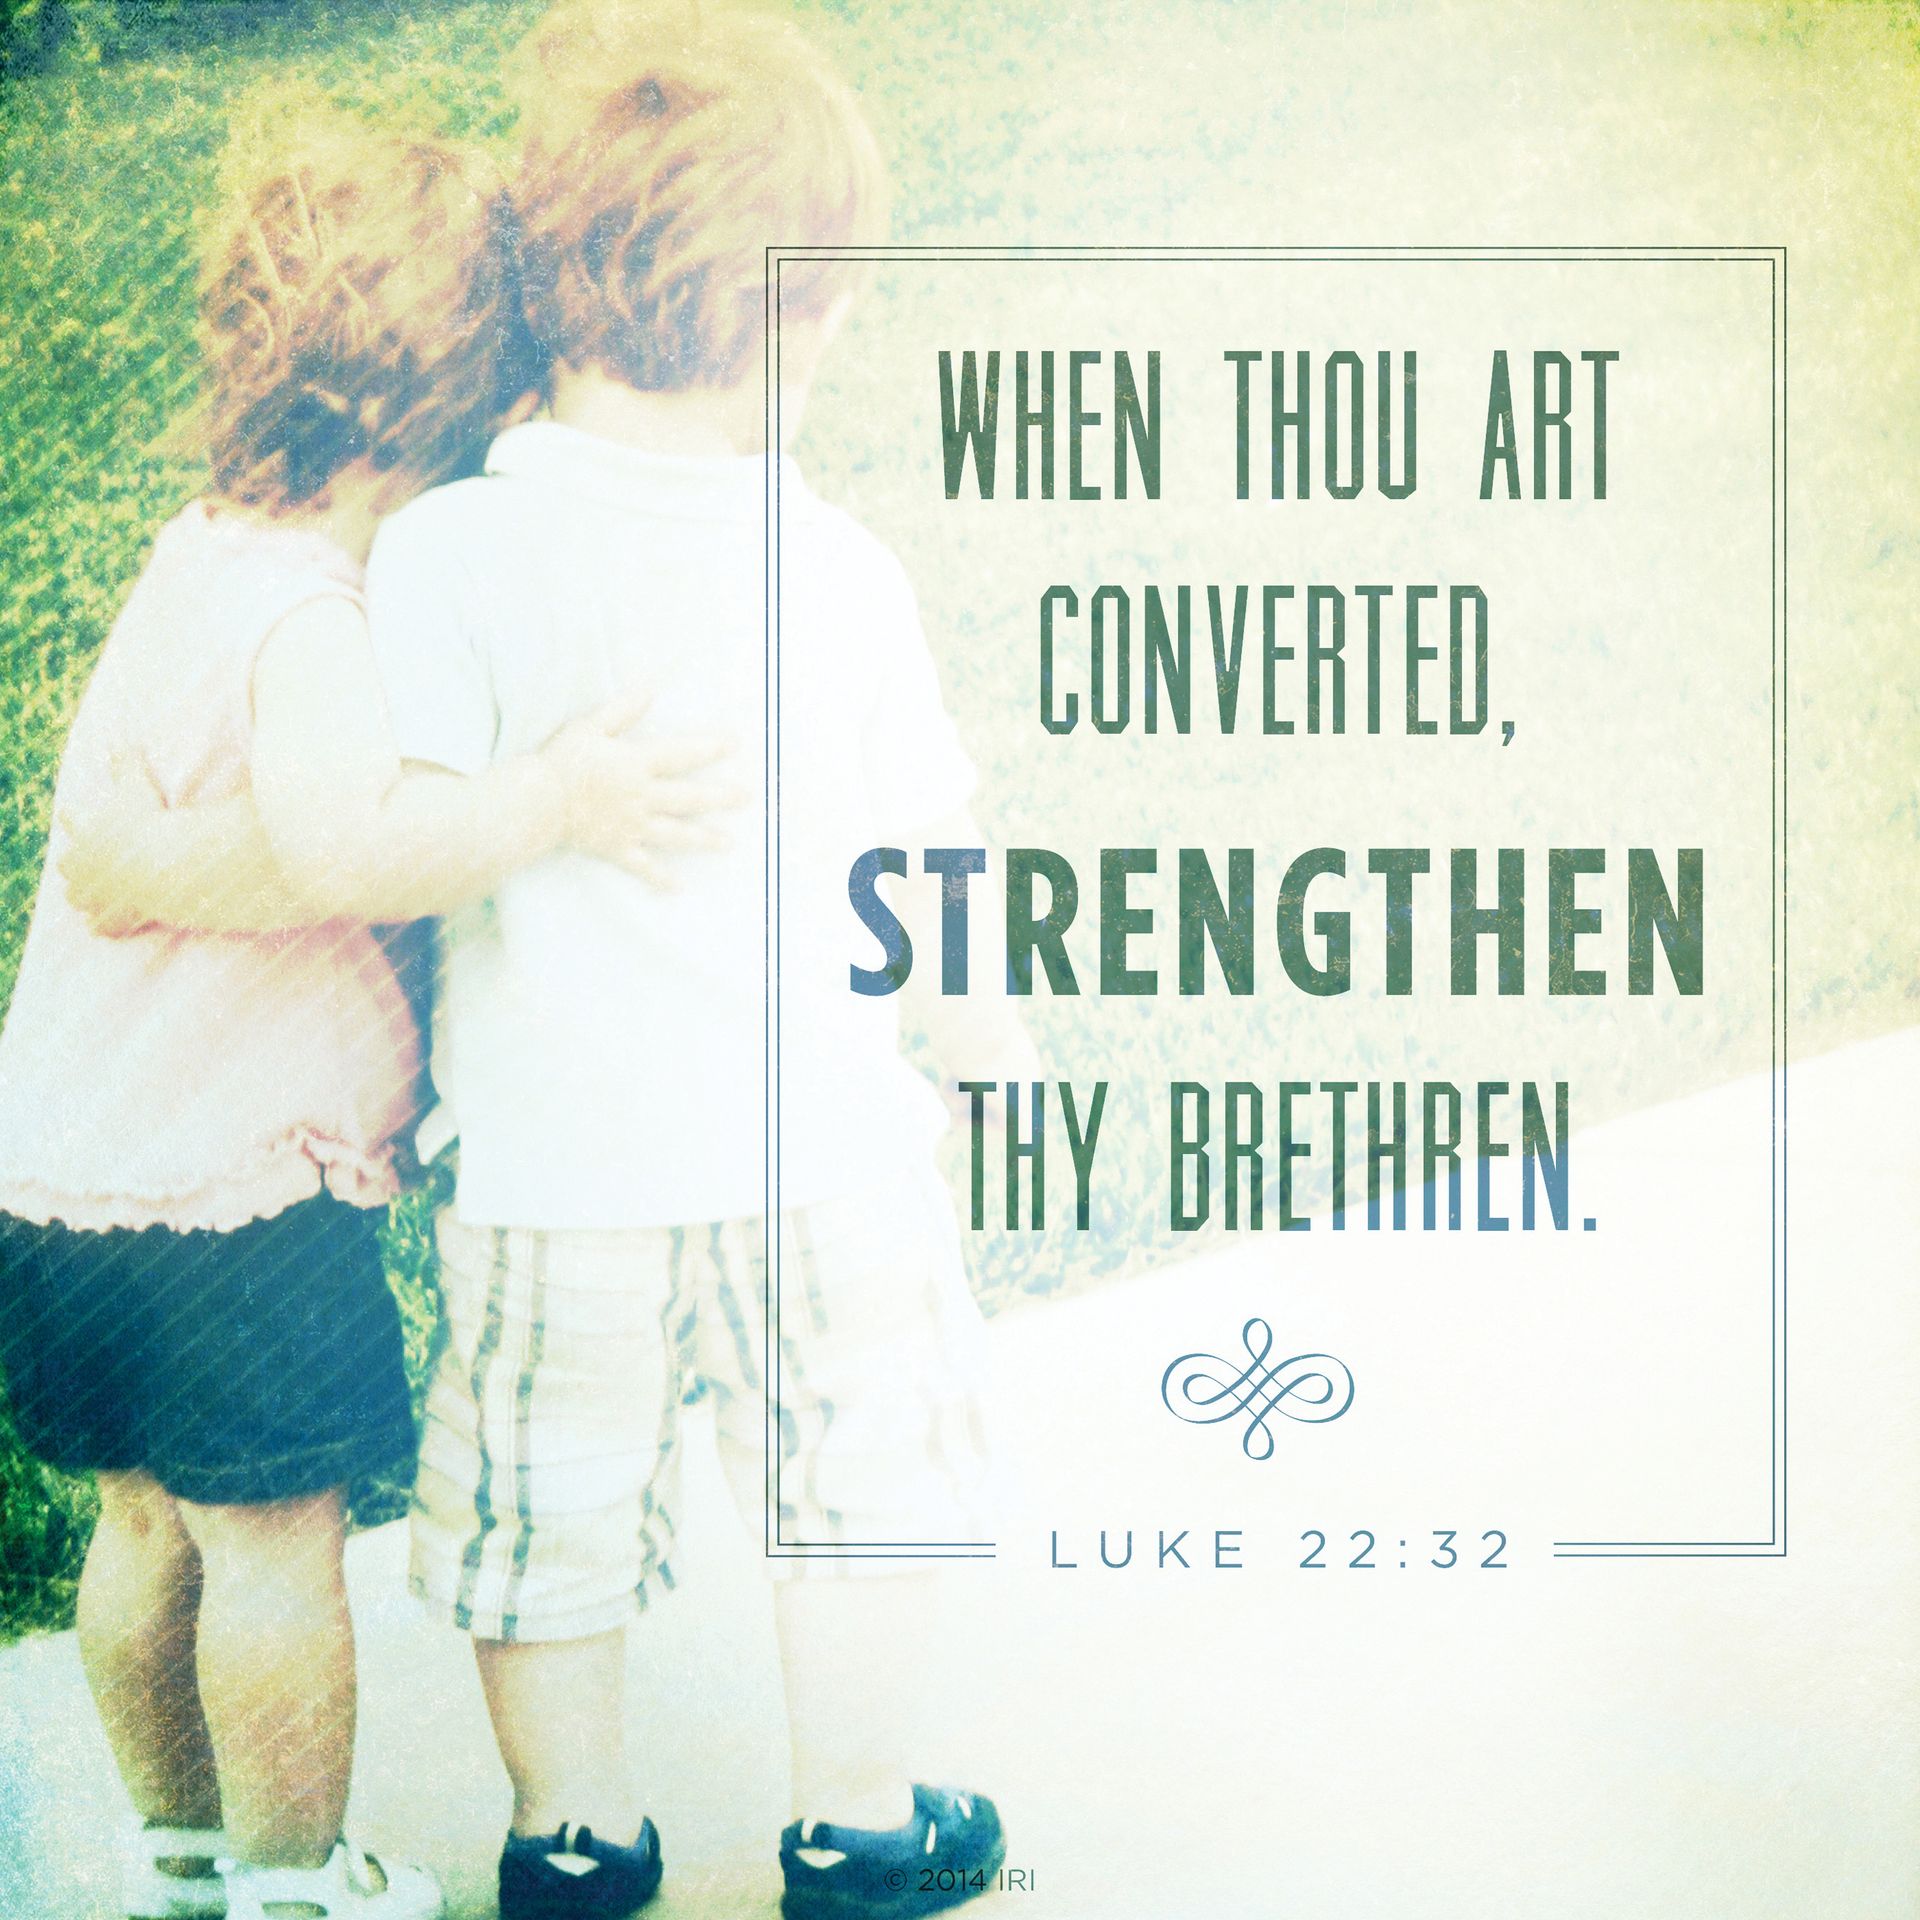 “When thou art converted, strengthen thy brethren.”—Luke 22:32